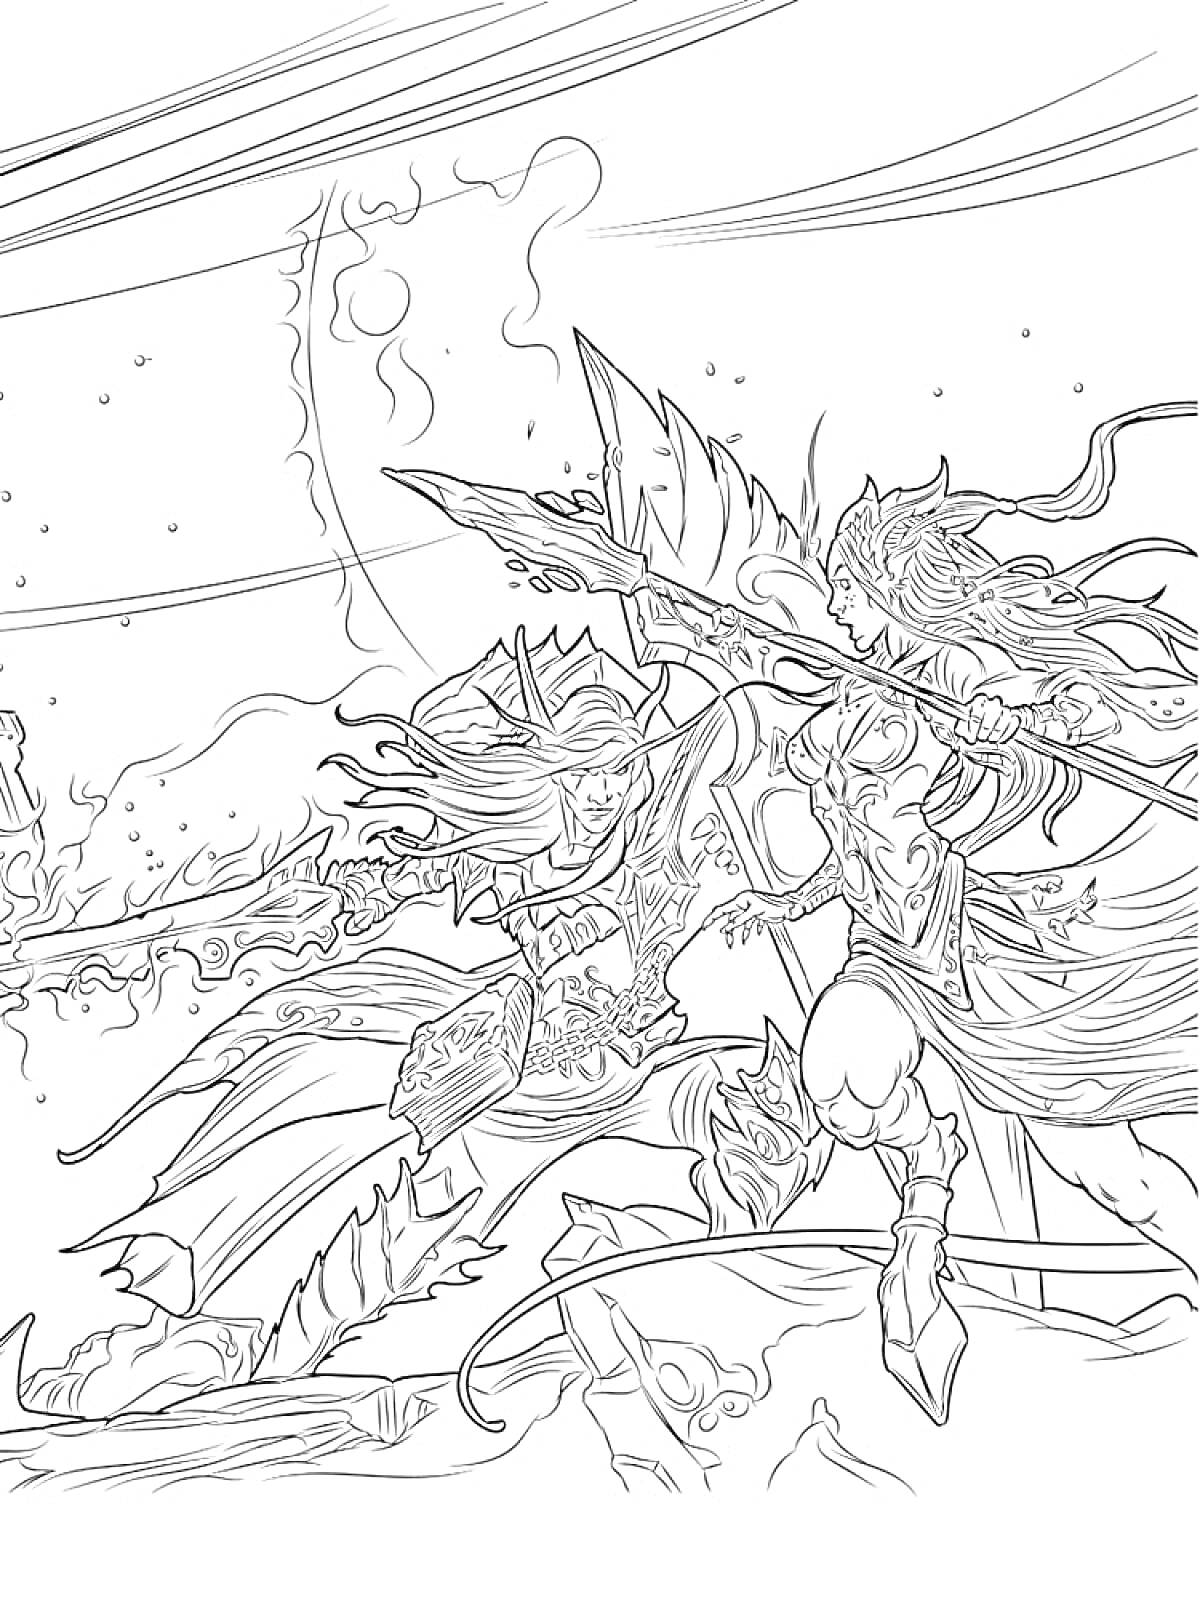 Раскраска Две сражающиеся воина с копьями и мечами на поле битвы